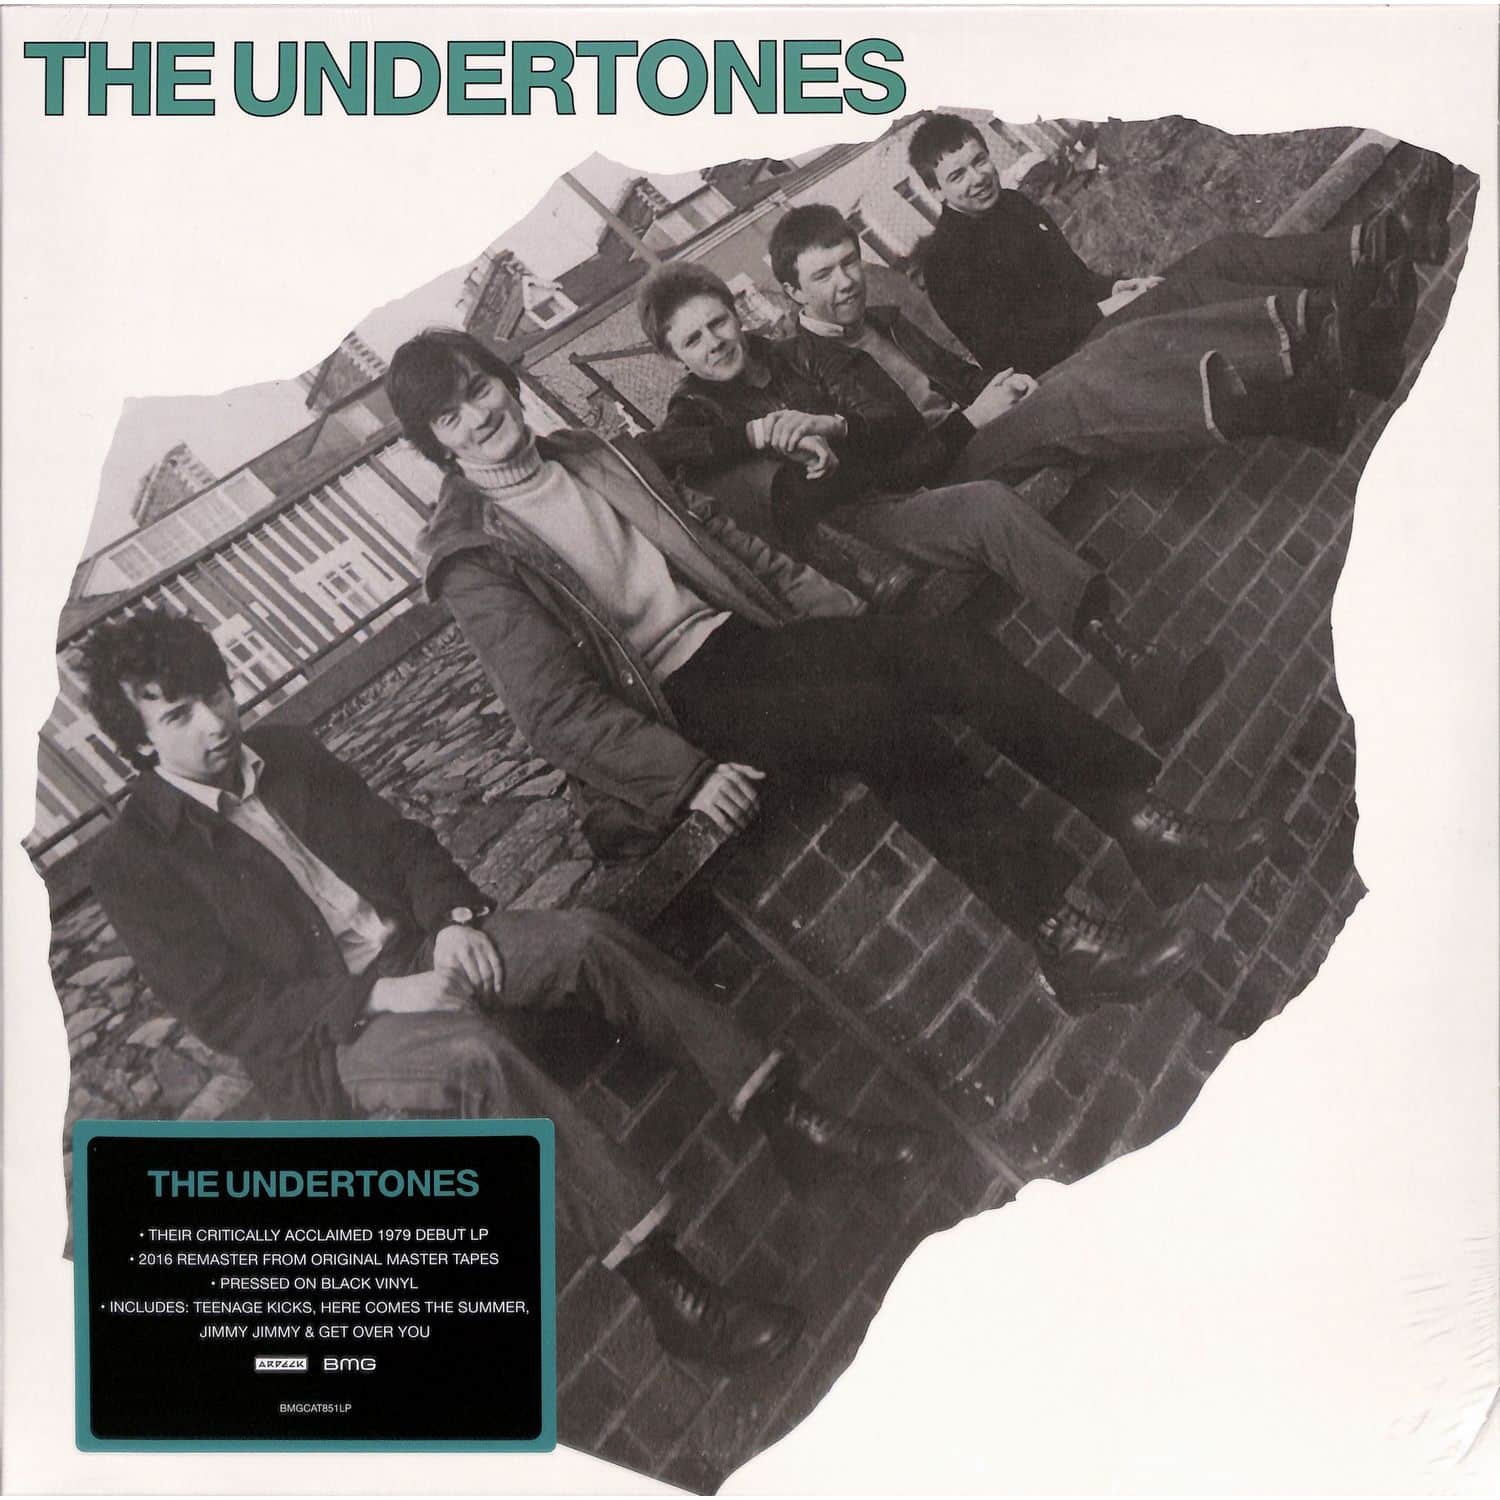 The Undertones - THE UNDERTONES 